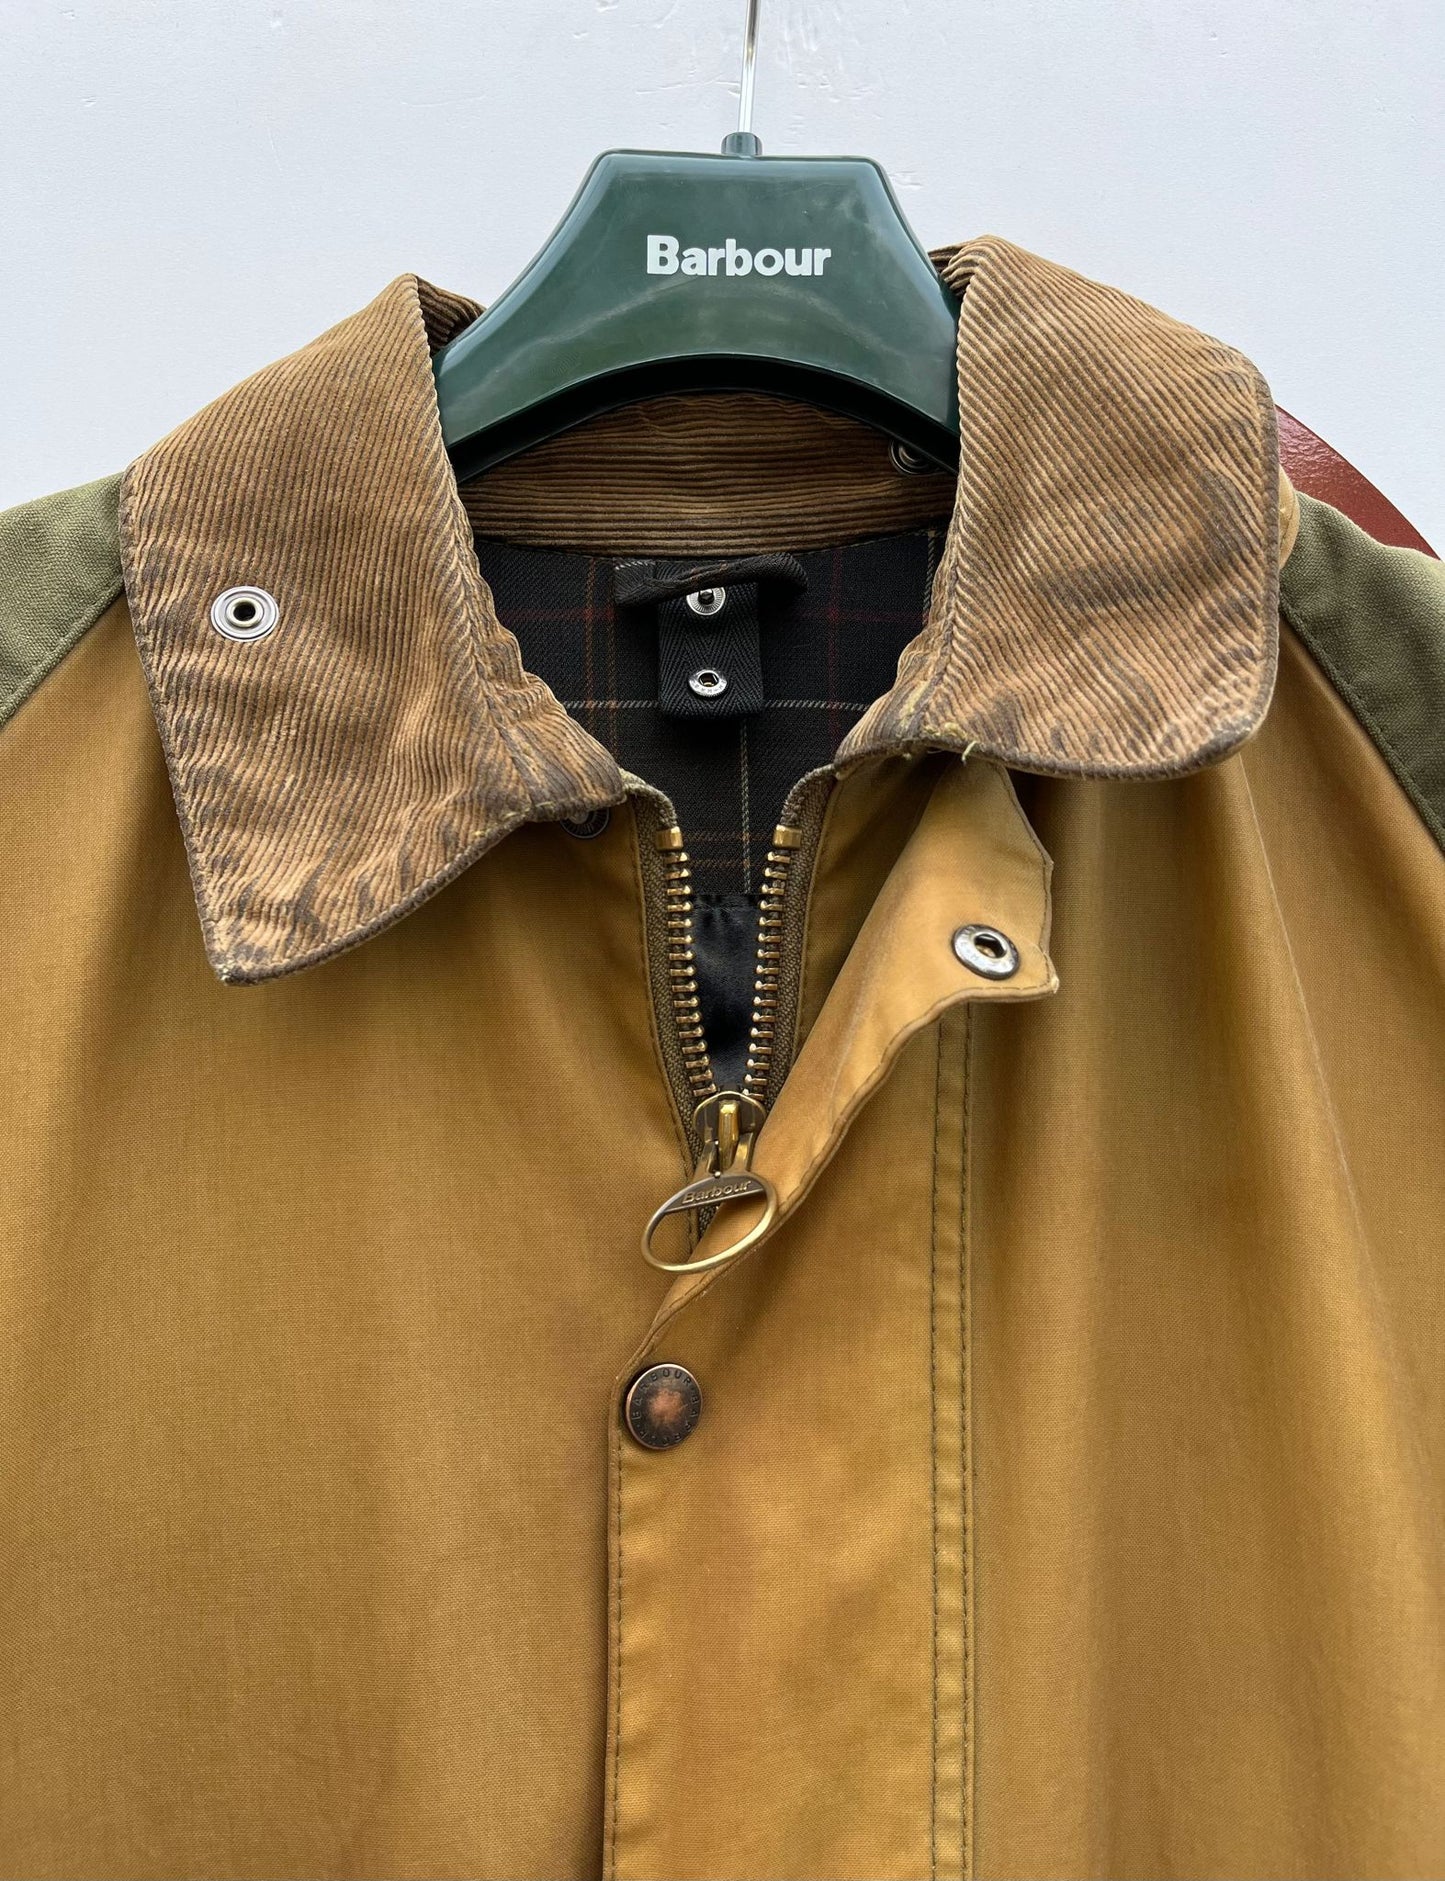 RARA Barbour Beaufort Sporting Jacket Beige c42/107 cm XL Beige Barbour Beaufort Sporting Jacket size c42